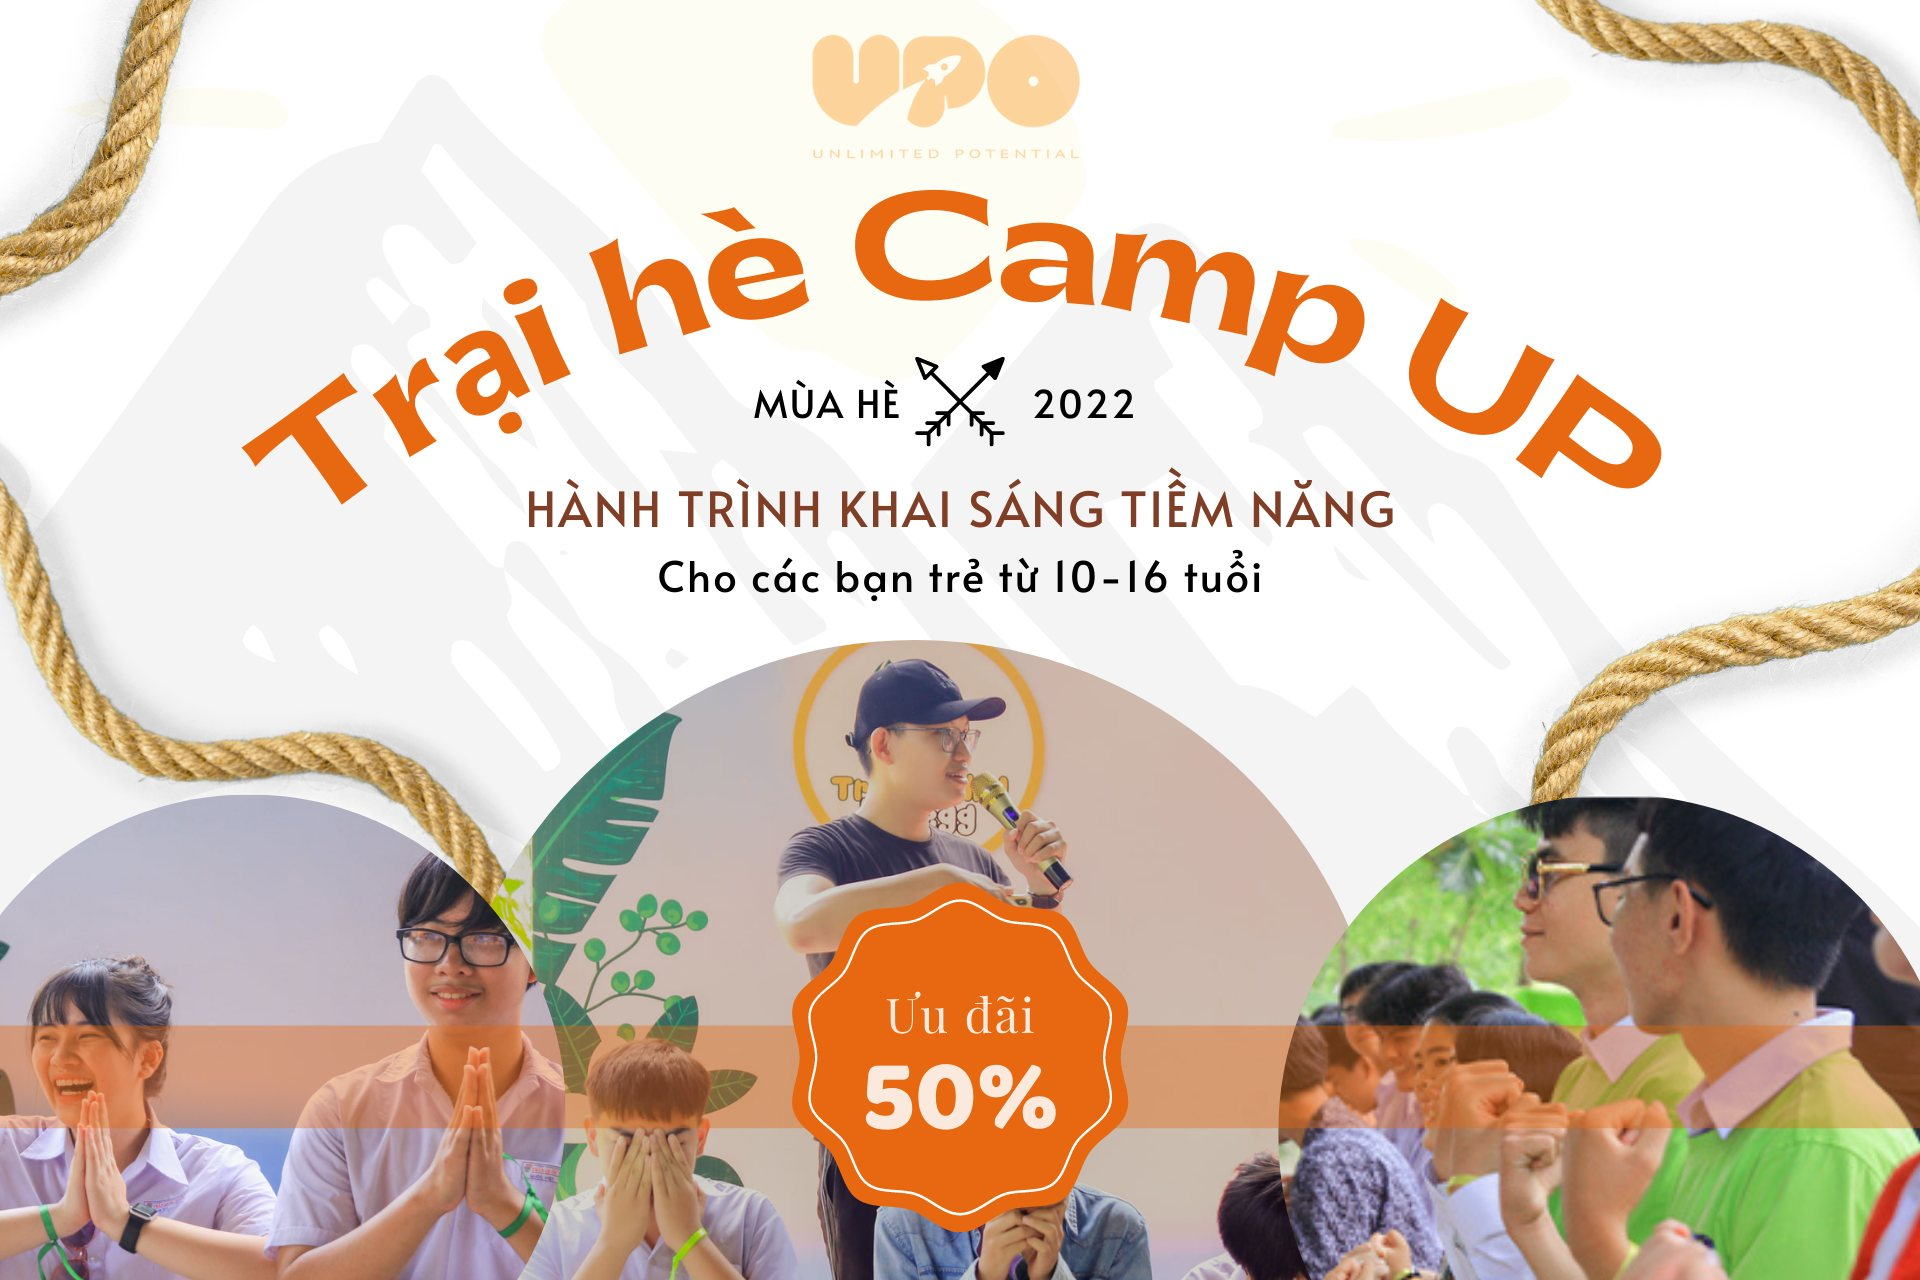 Khai sáng tiềm năng trẻ tại trại hè Camp Up của UPO. 